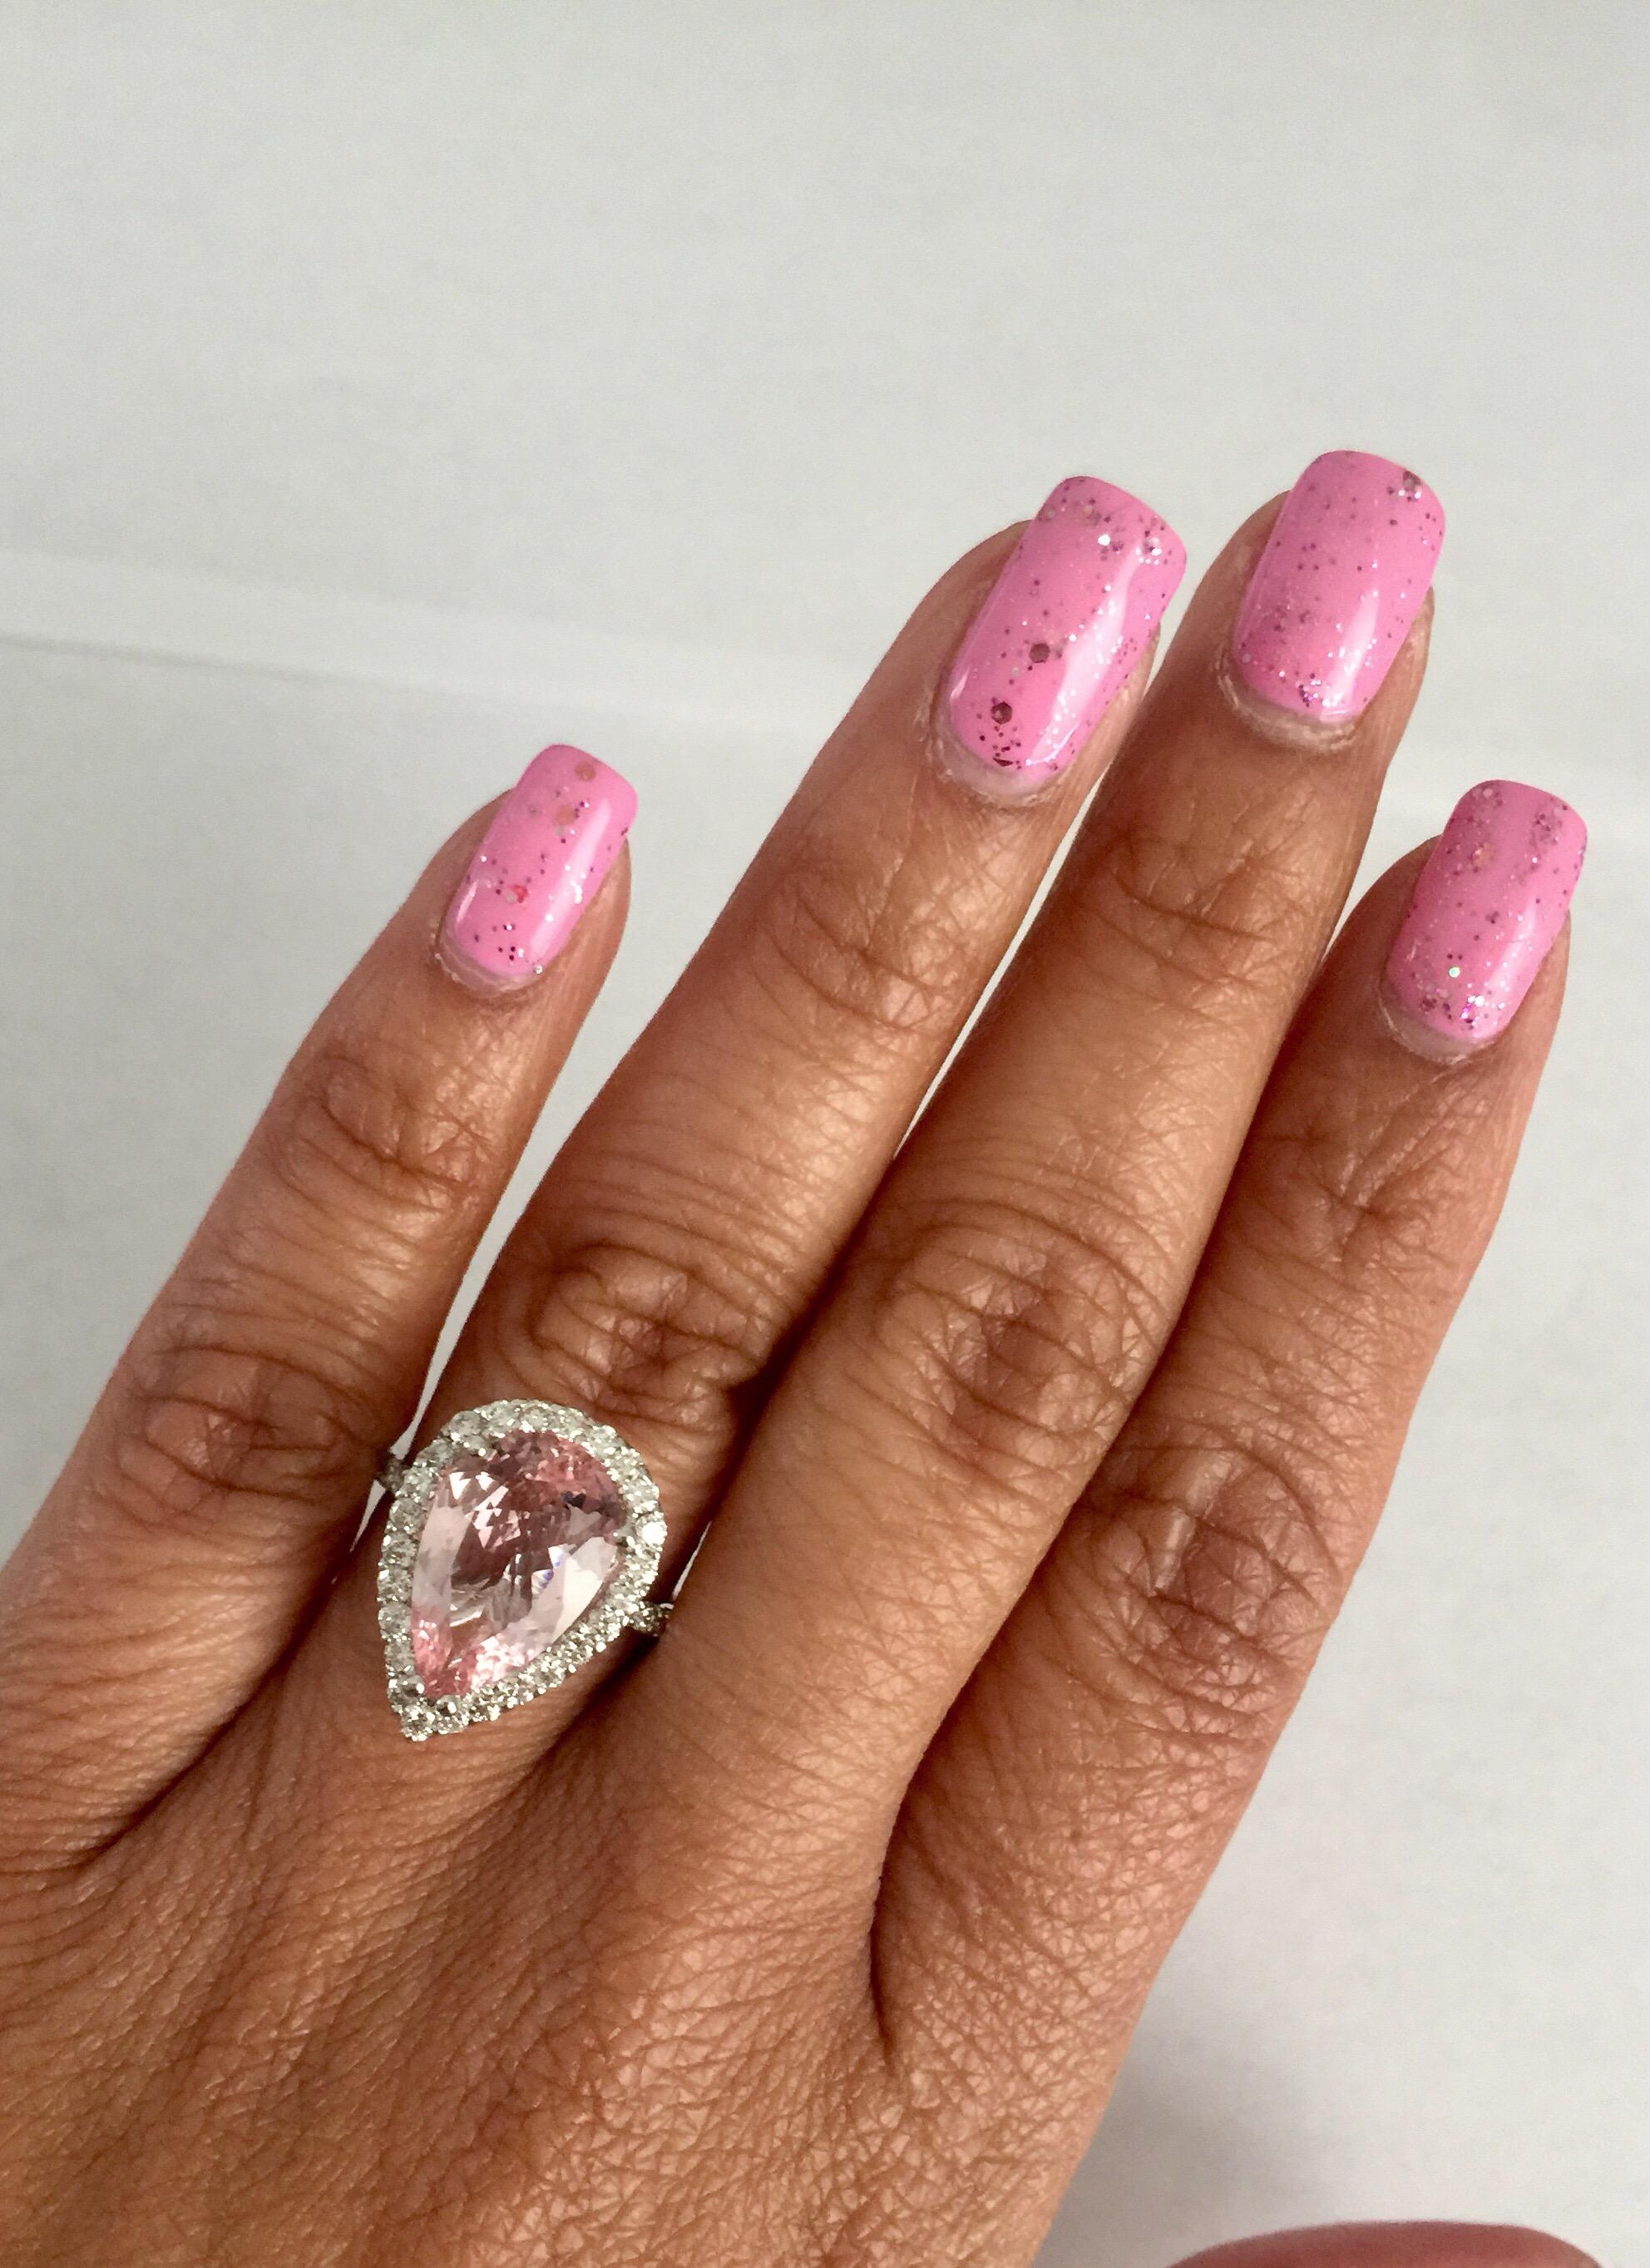 4.11 Carat Pear Cut Pink Morganite Diamond 18 Karat White Gold Engagement Ring 2